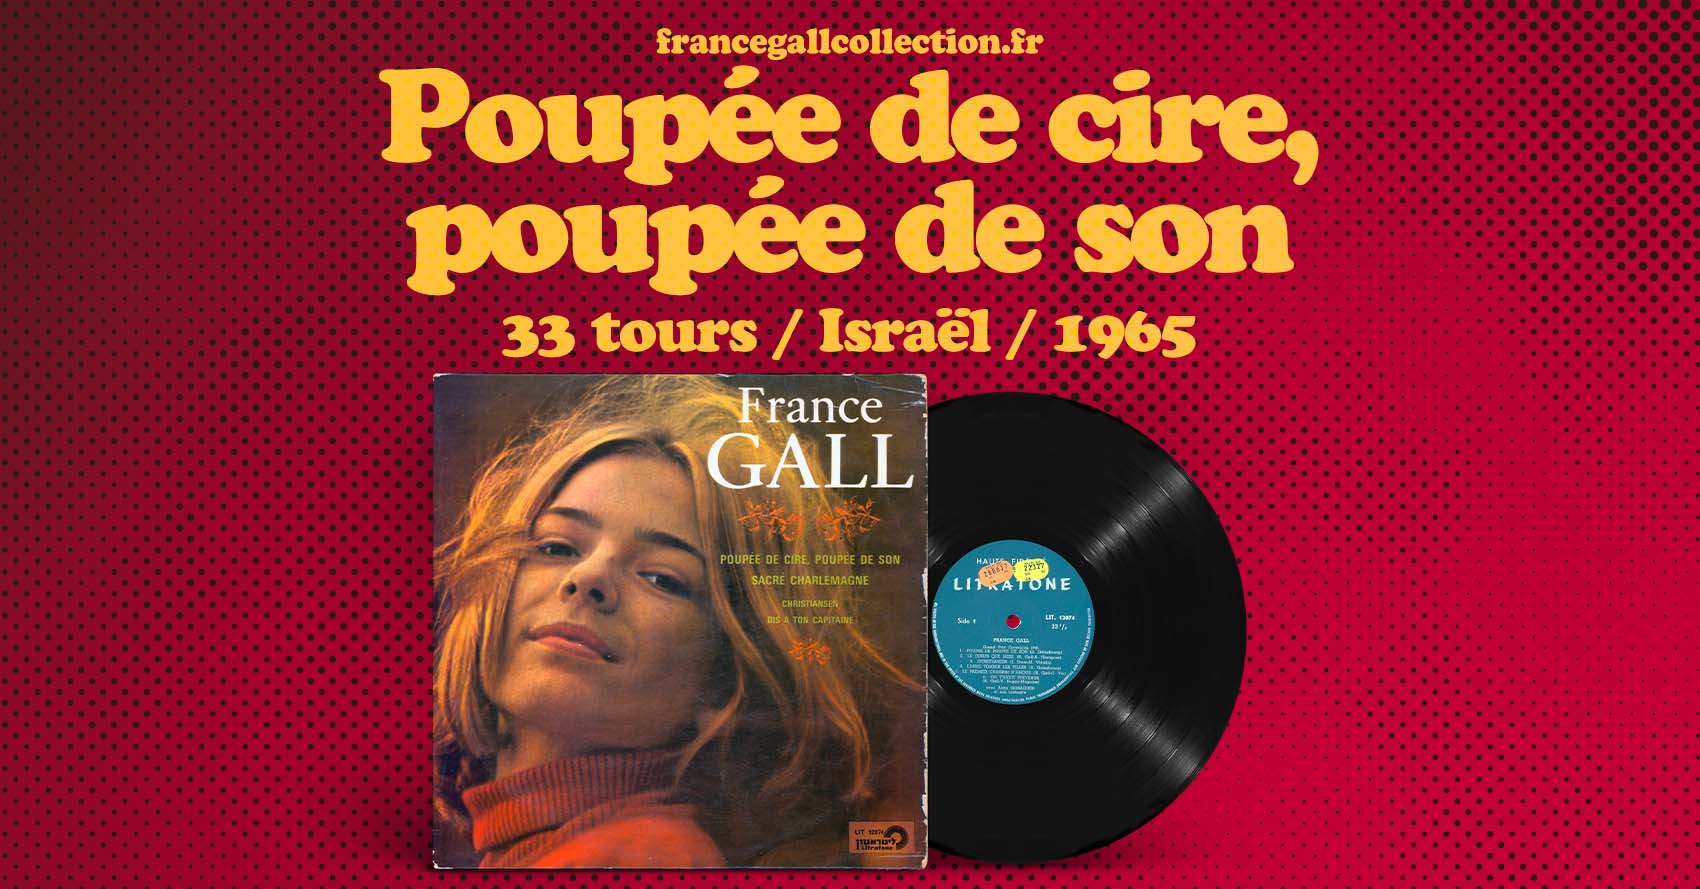 Édition en provenance d'Israël de Poupée de cire, poupée de son, le quatrième album sur vinyle de France Gall.